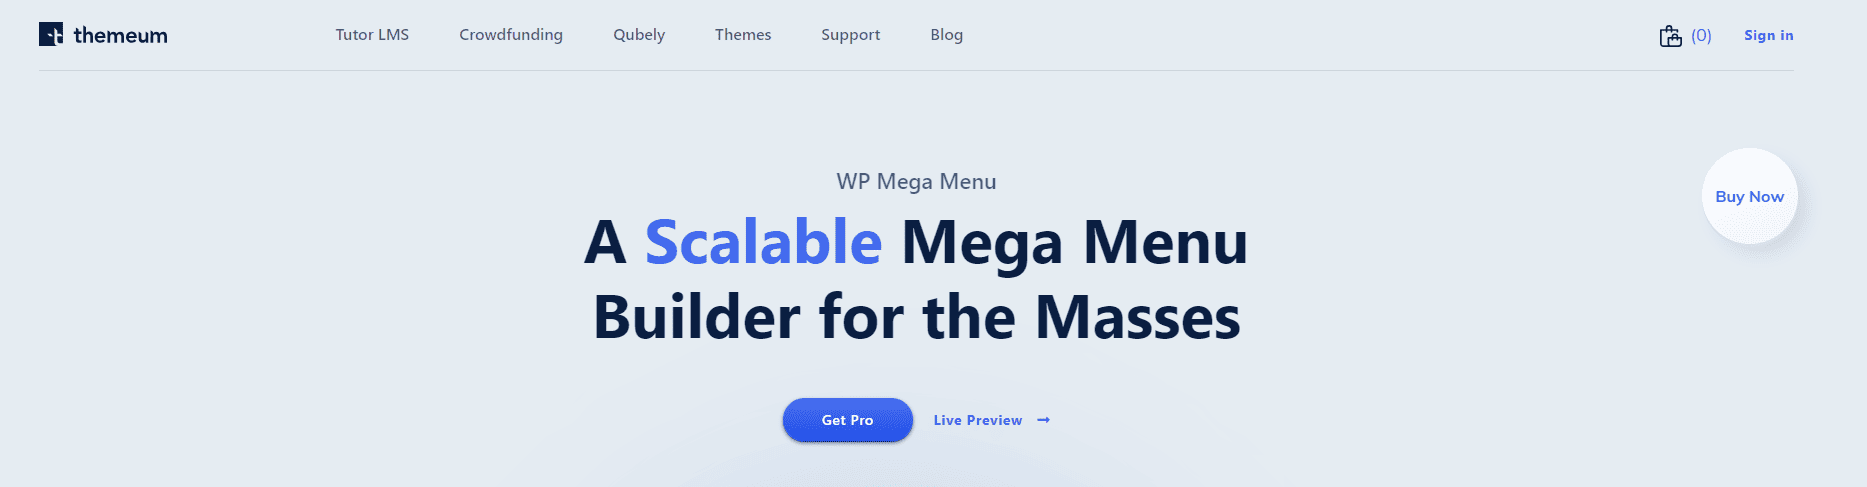 WP Mega Menu Landing Page